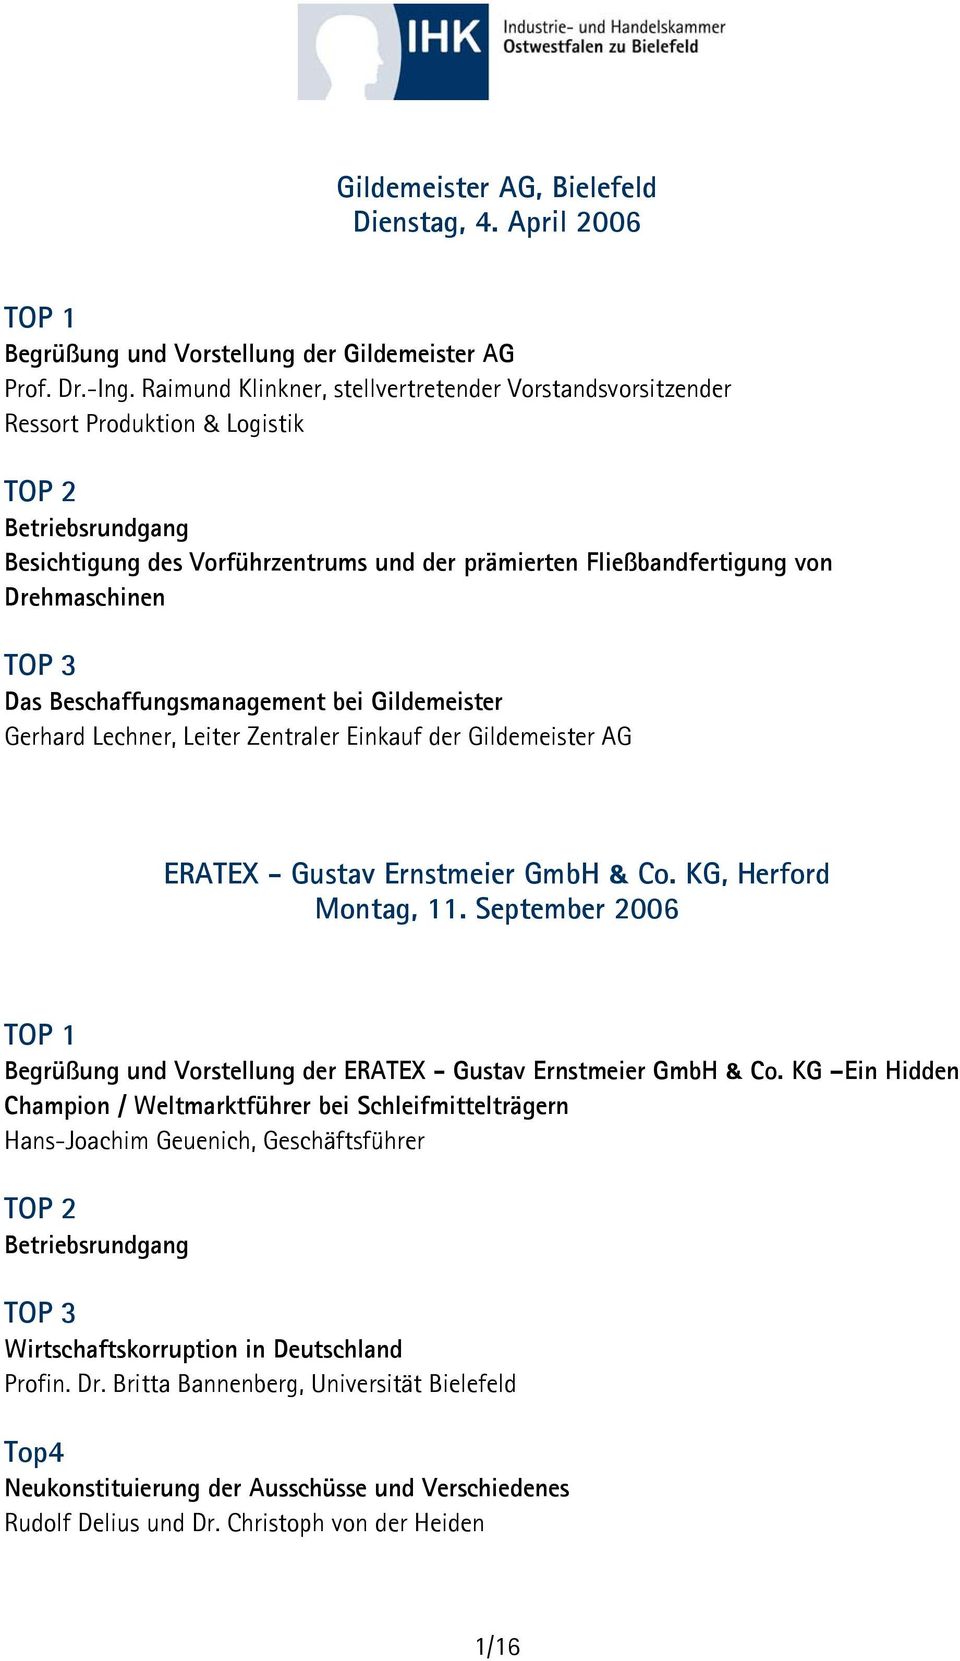 Beschaffungsmanagement bei Gildemeister Gerhard Lechner, Leiter Zentraler Einkauf der Gildemeister AG ERATEX - Gustav Ernstmeier GmbH & Co. KG, Herford Montag, 11.